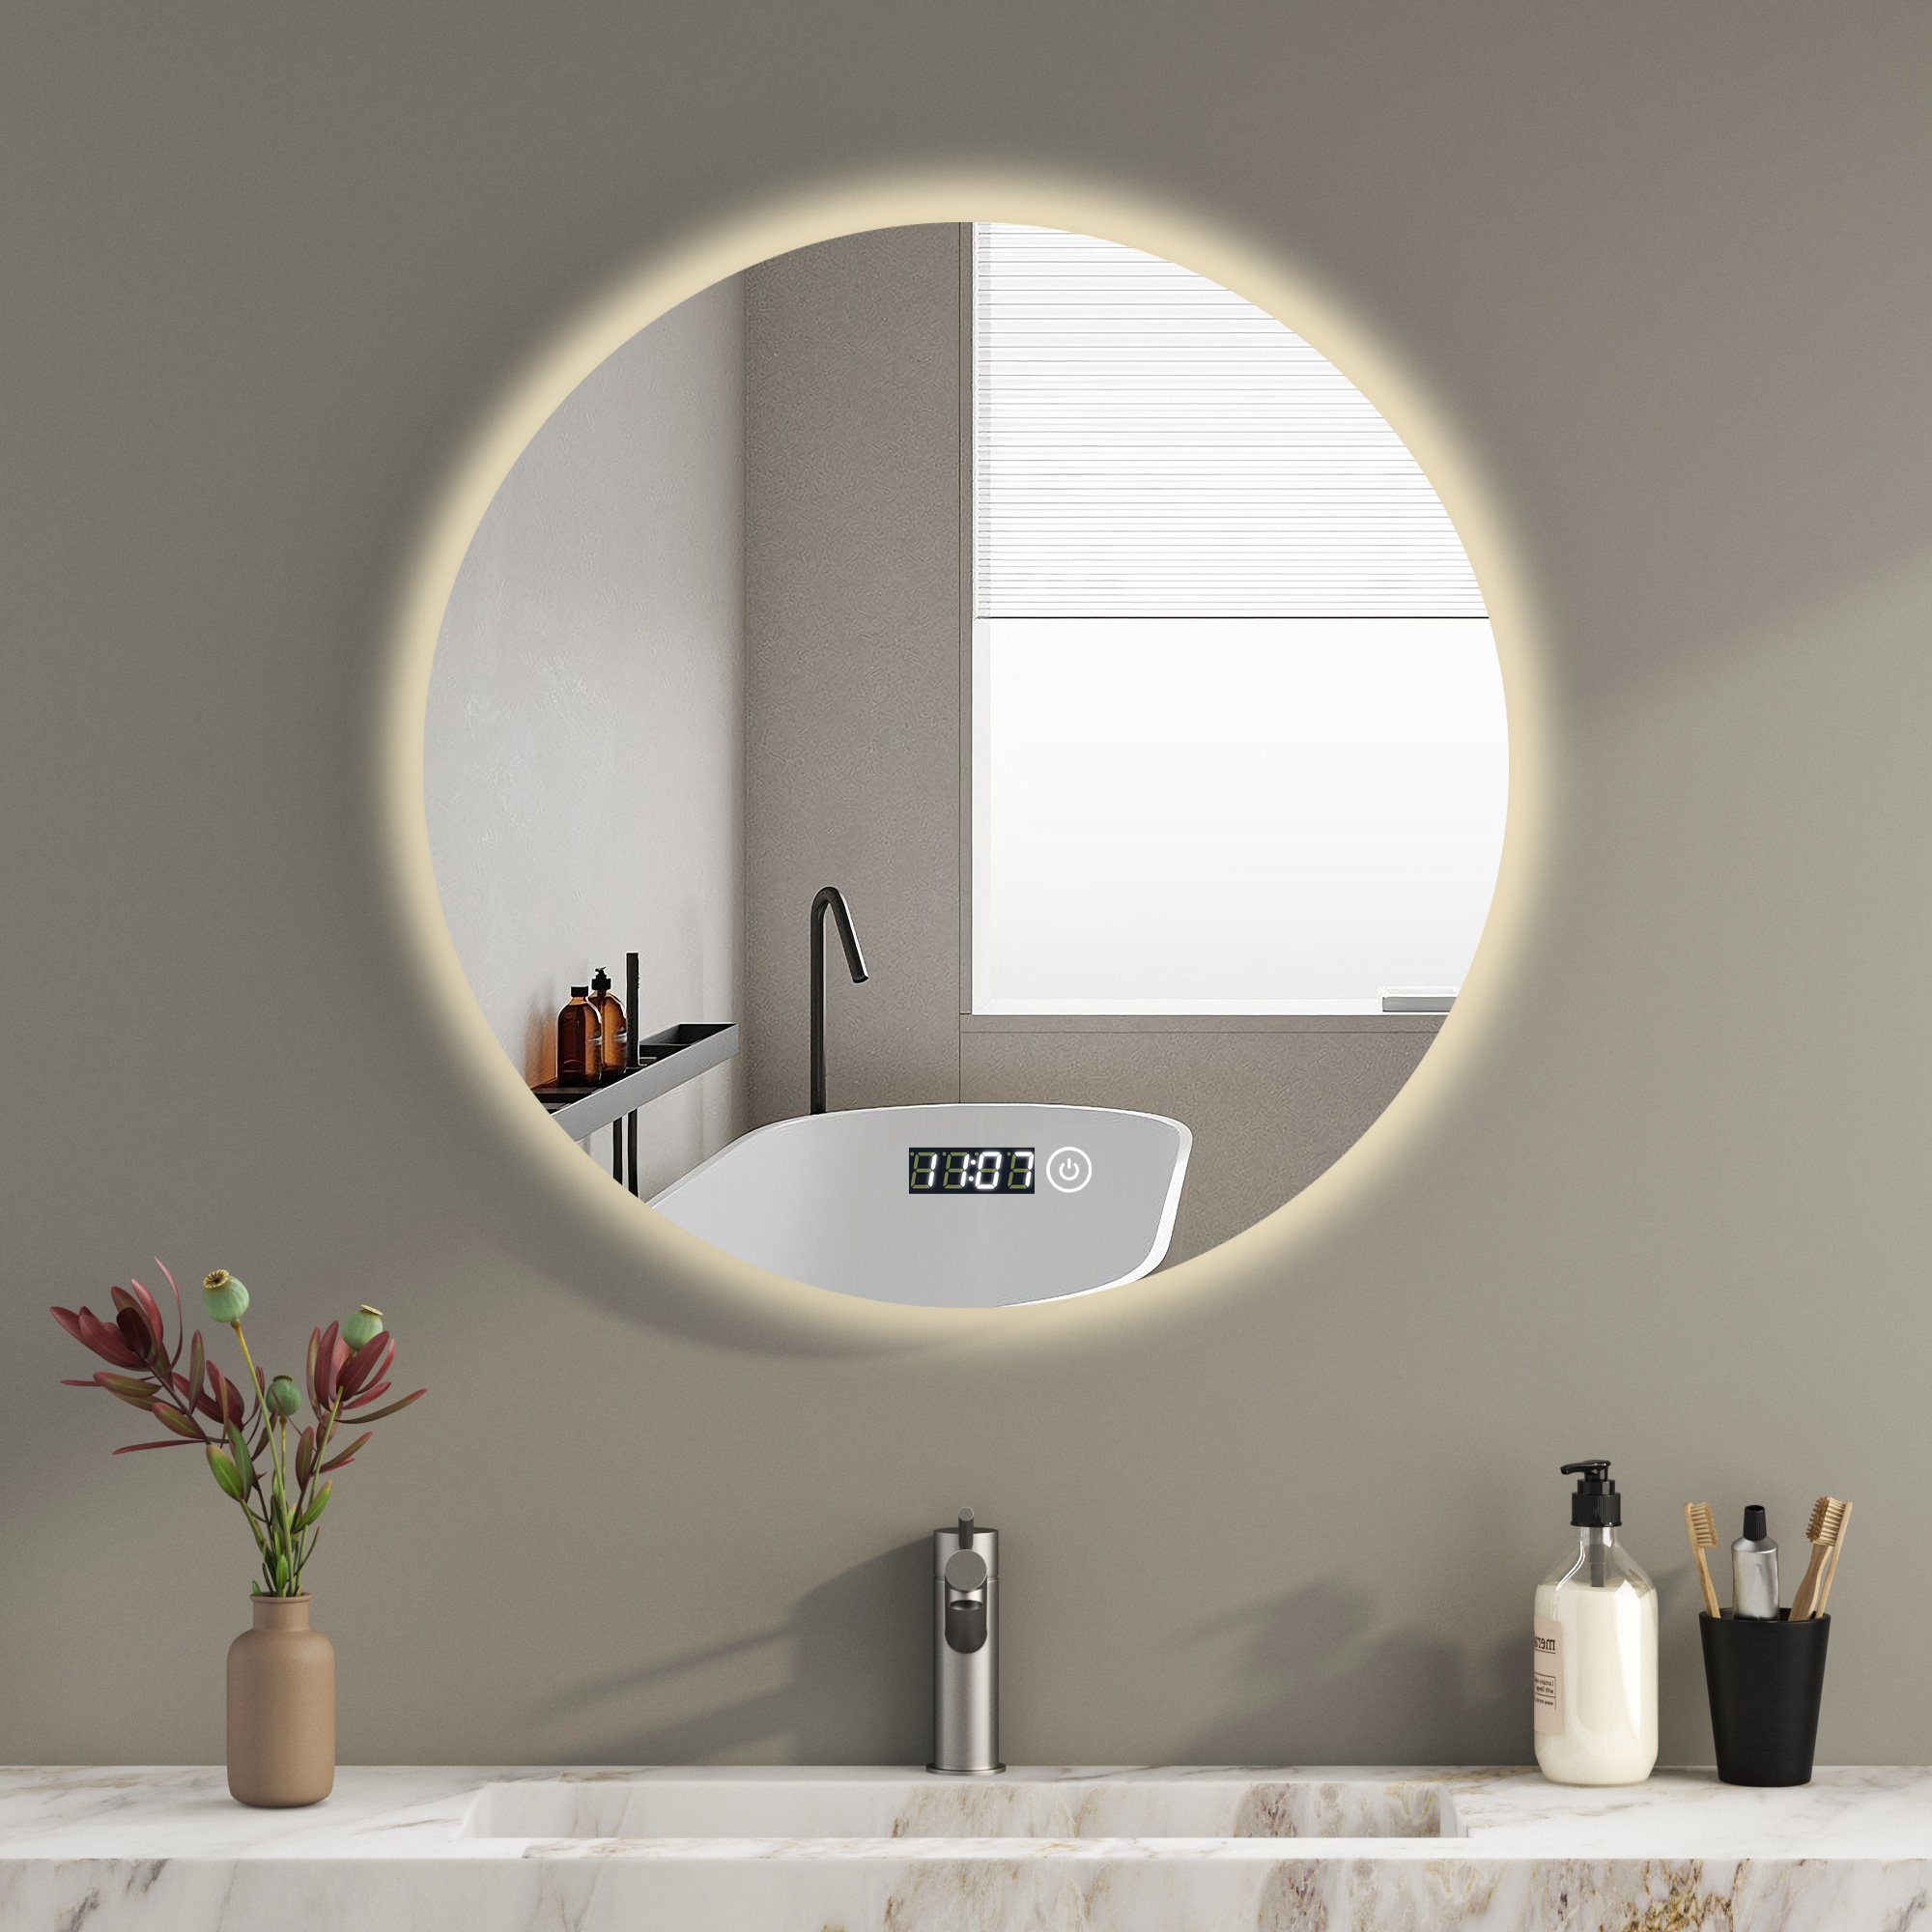 WDWRITTI Badspiegel Led Rund Rundspiegel 60 cm mit beleuchtung und Uhr  3Lichtfarben Memory (Wandspiegel, Helligkeit dimmbar), Touch,Wandschalter  auswählbar, Energiesparend, IP44